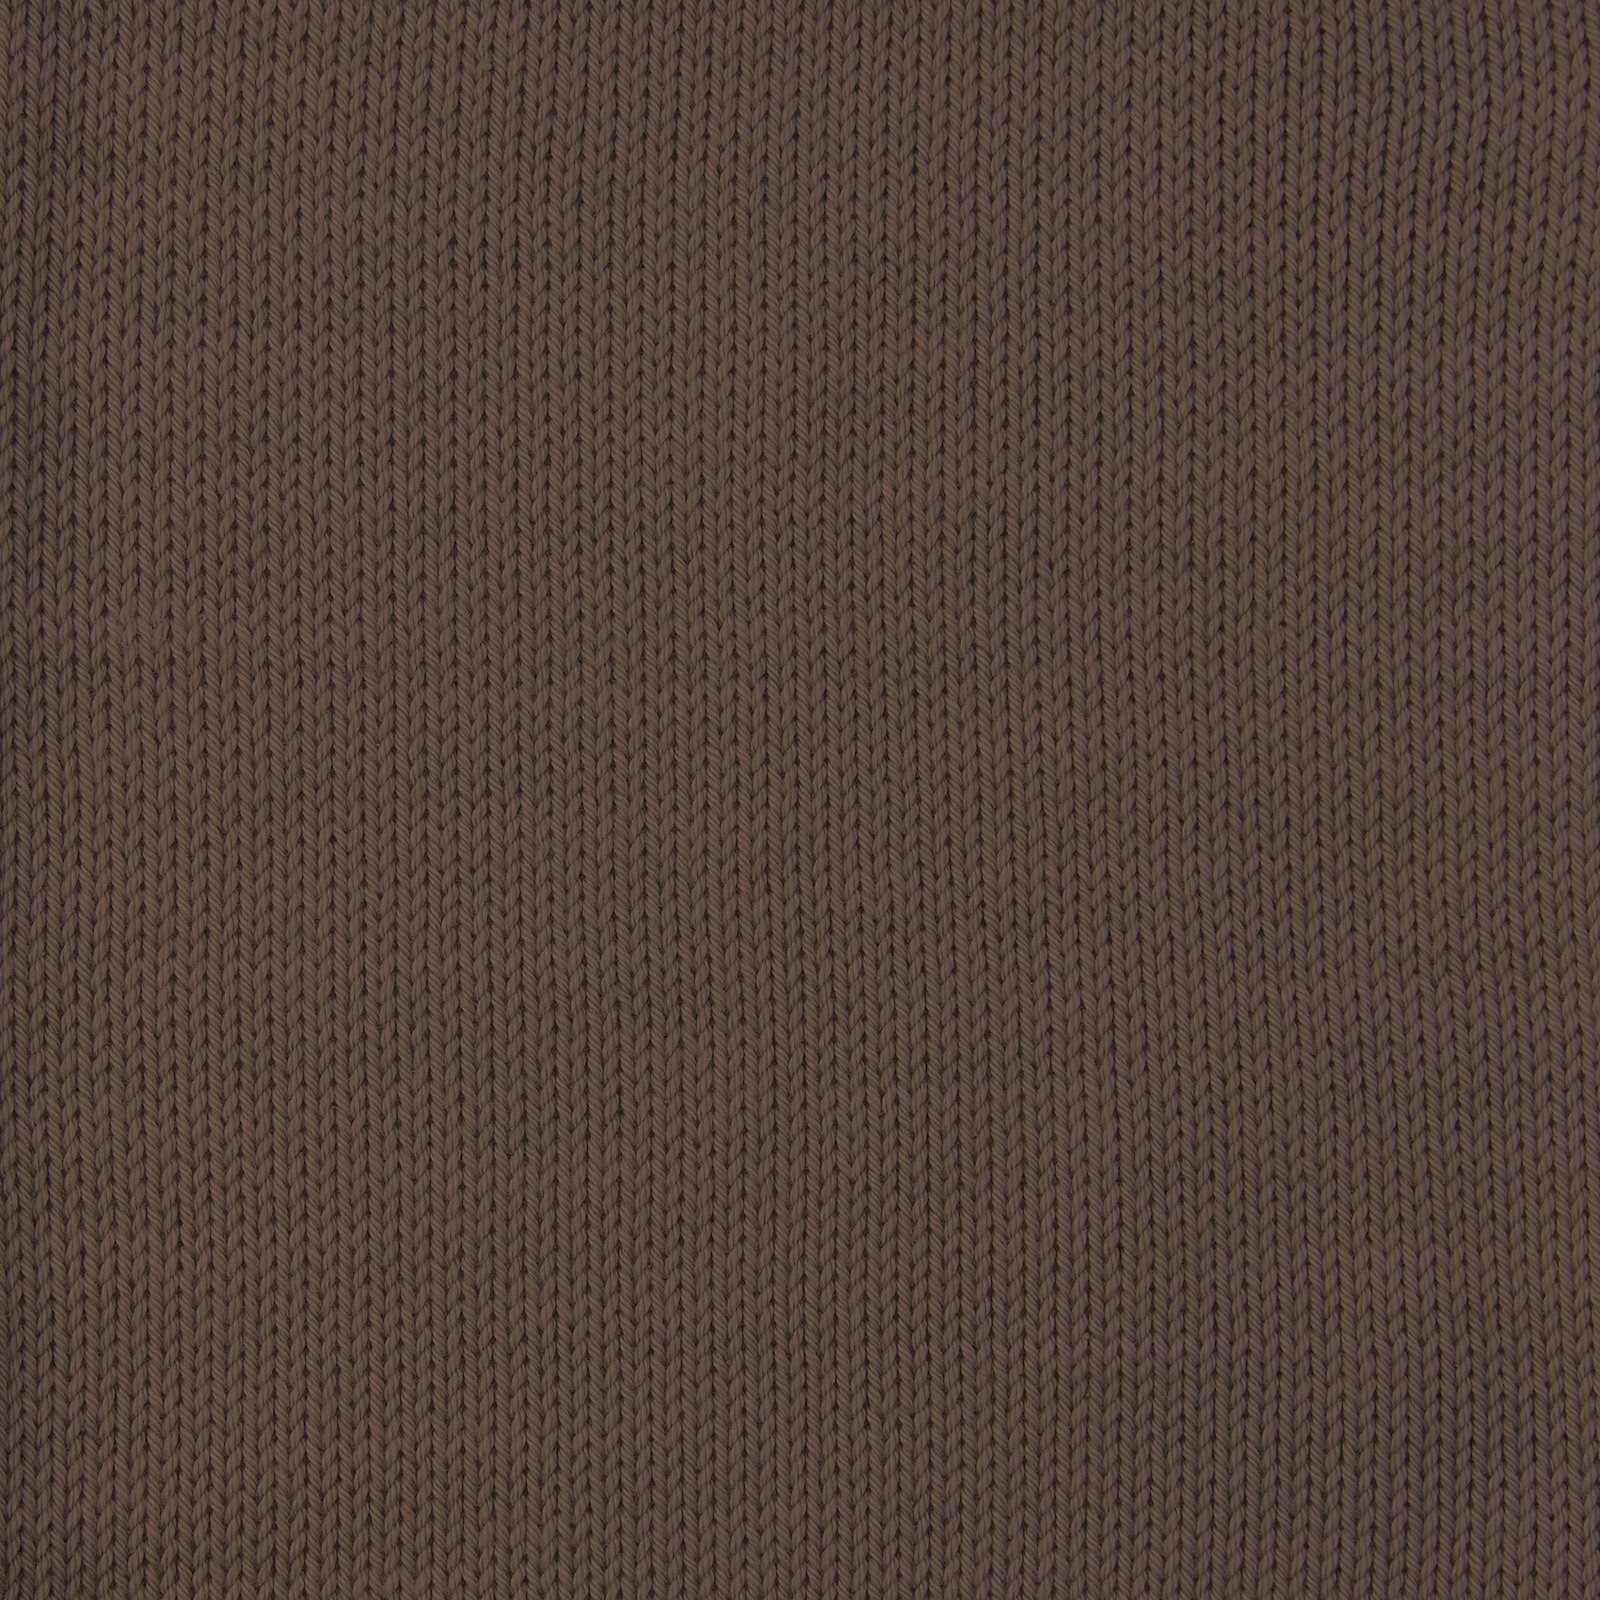 FRAYA, 100% cotton 8/4  yarn  "Colourful", light brown 90060037_sskit